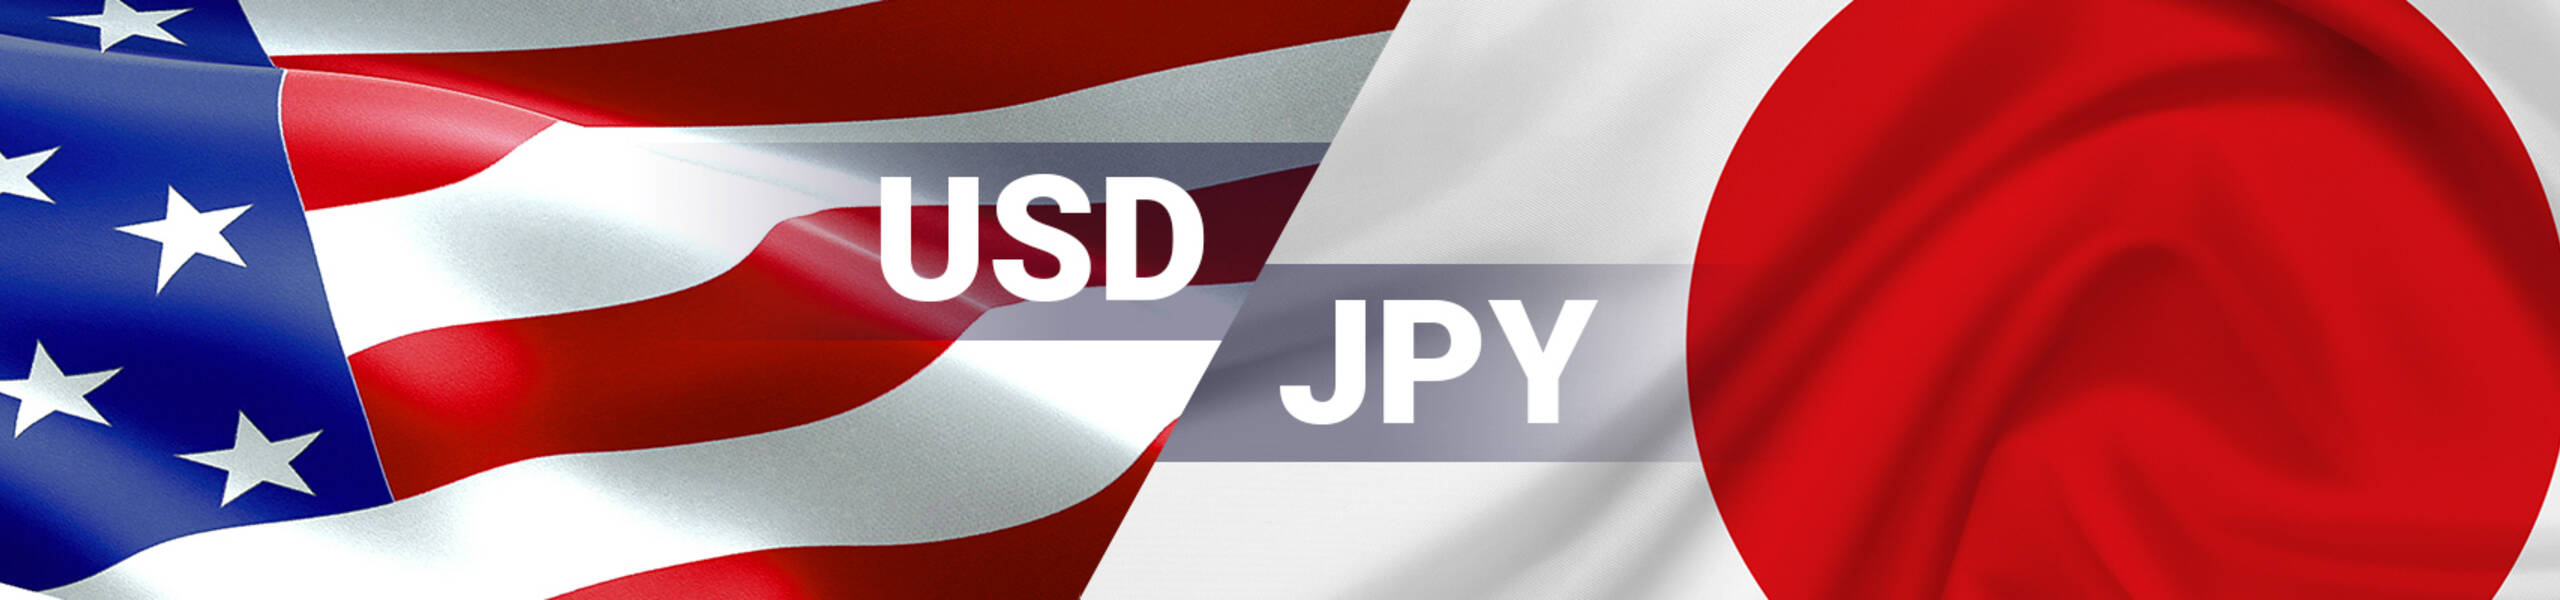 USD/JPY: เริ่มปรับตัวอยู่ในทิศทางขาลงระยะสั้นถึงระยะกลาง